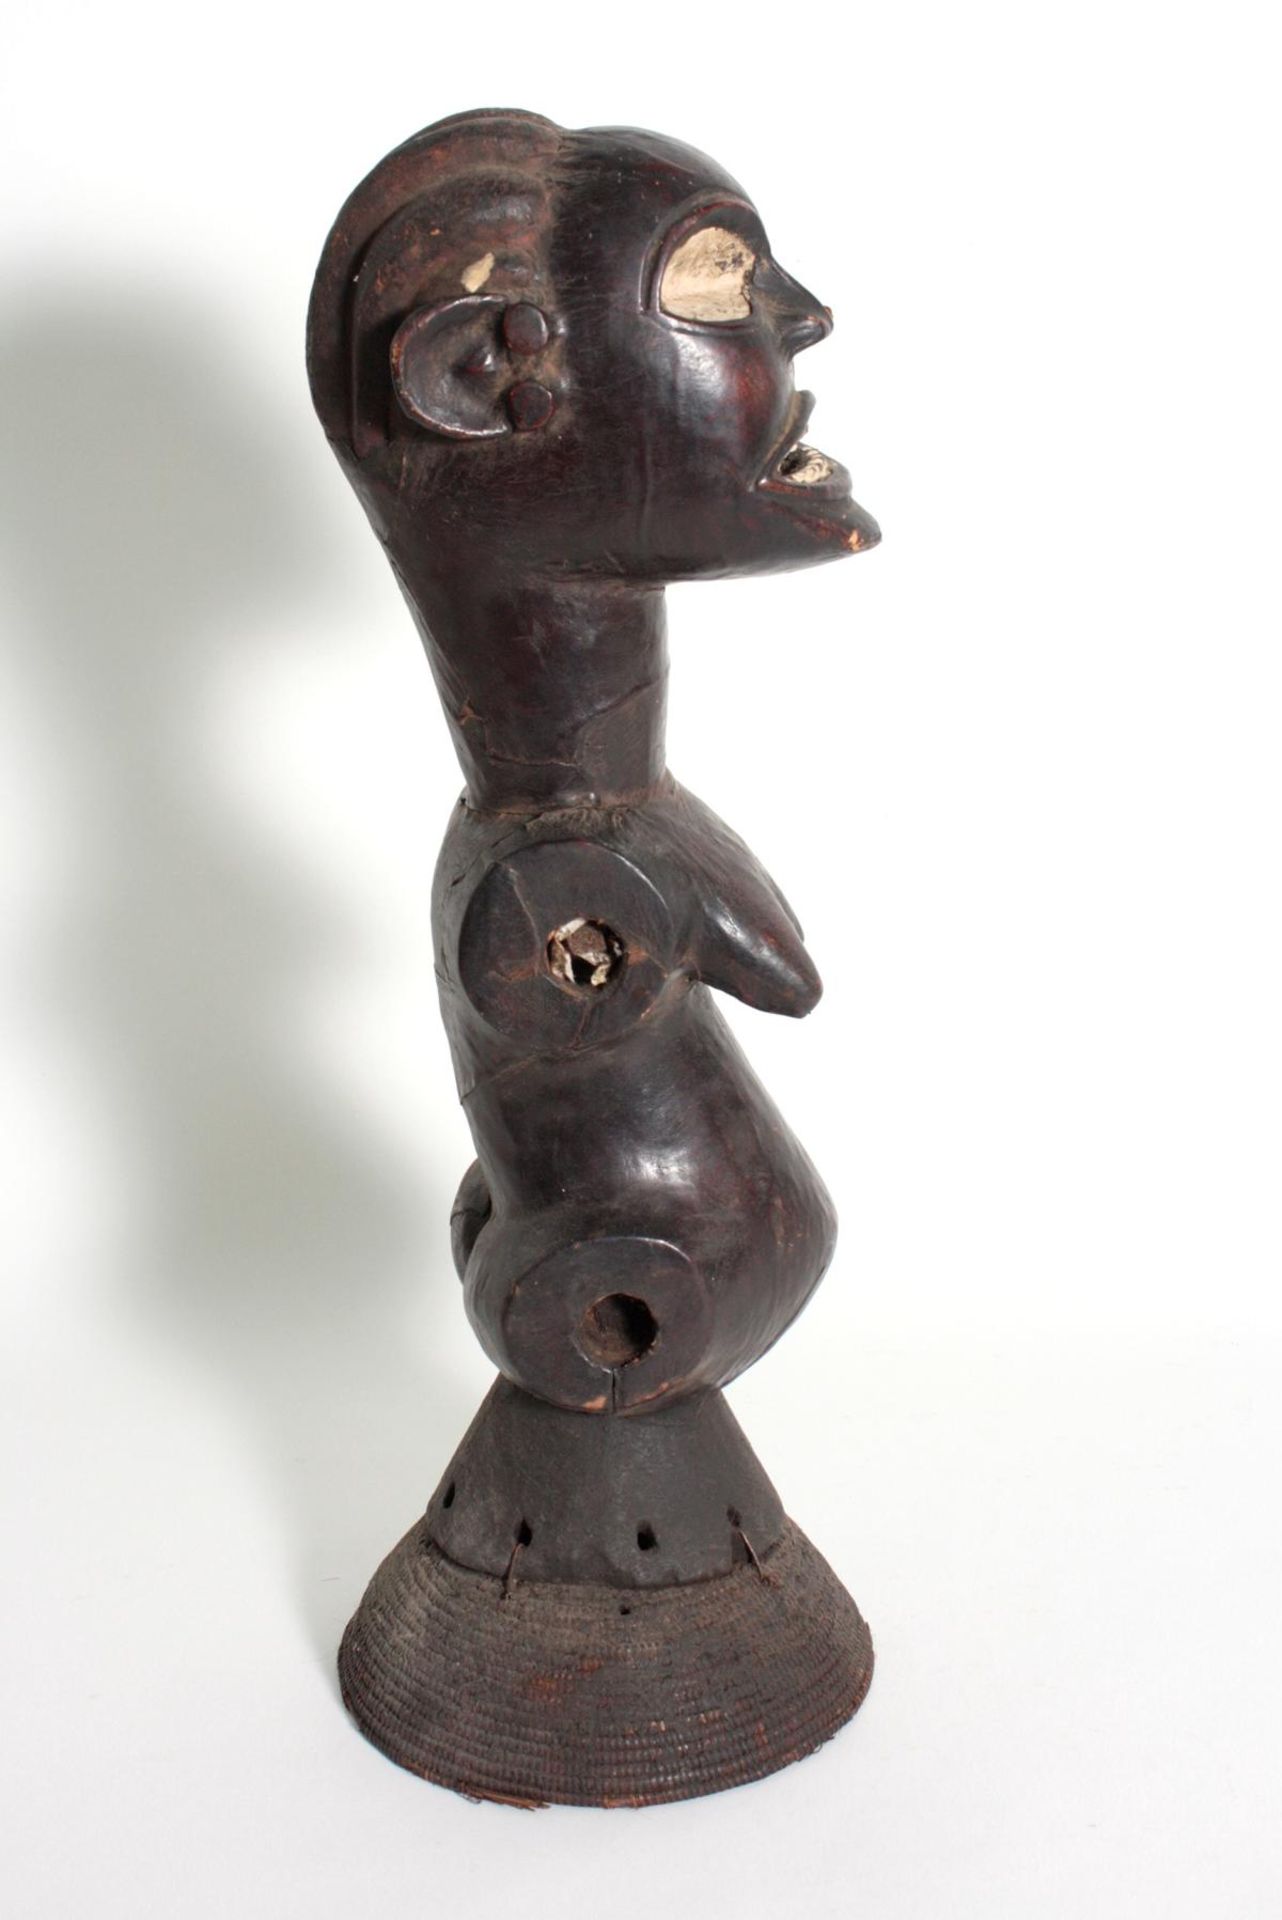 Anthropomorpher Tanzaufsatz, Nigeria. 1. Hälfte 20. Jh.Holz geschnitzt, mit Leder überzogen, - Bild 3 aus 6